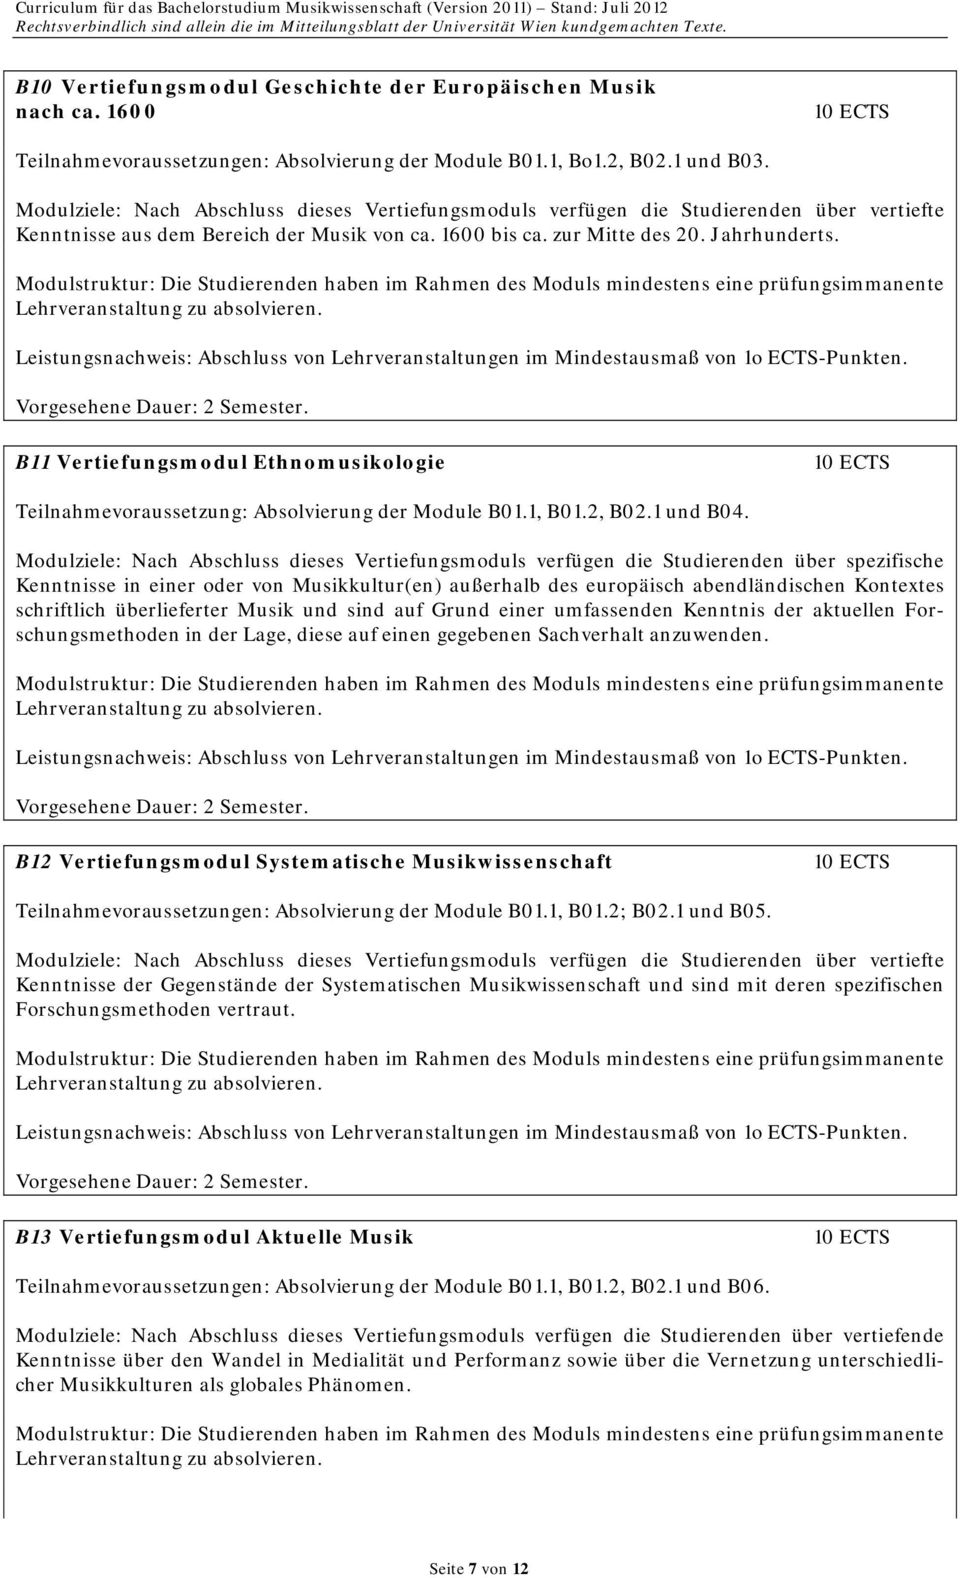 B11 Vertiefungsmodul Ethnomusikologie Teilnahmevoraussetzung: Absolvierung der Module B01.1, B01.2, B02.1 und B04.